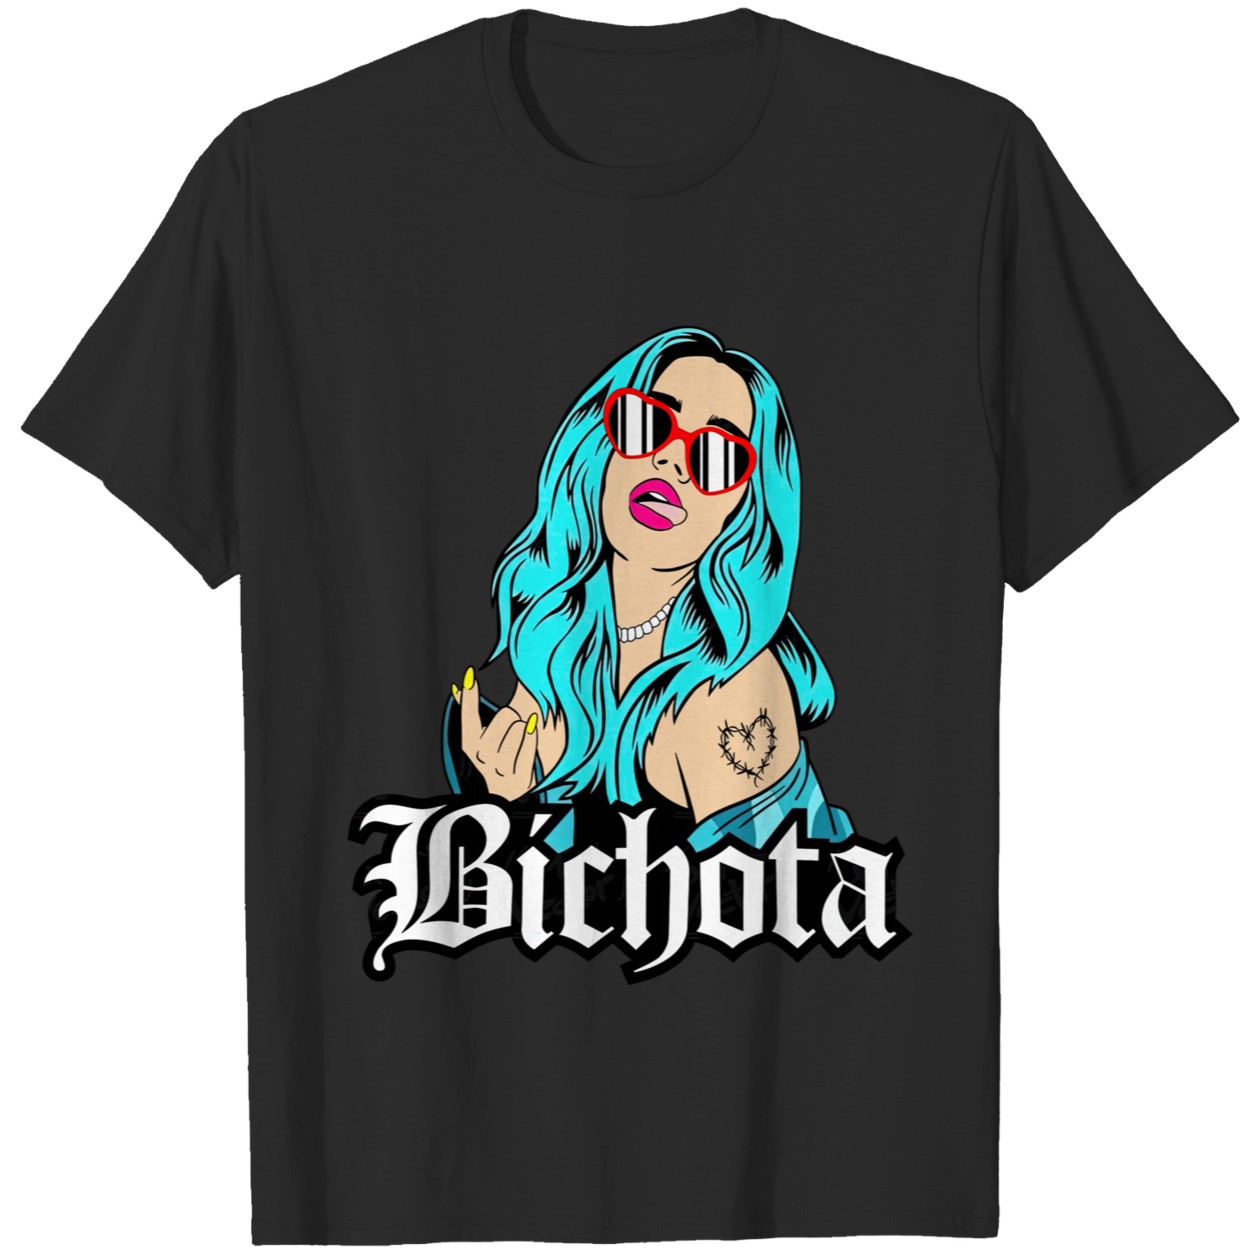 Bichota Graphic Print T-Shirt IYT